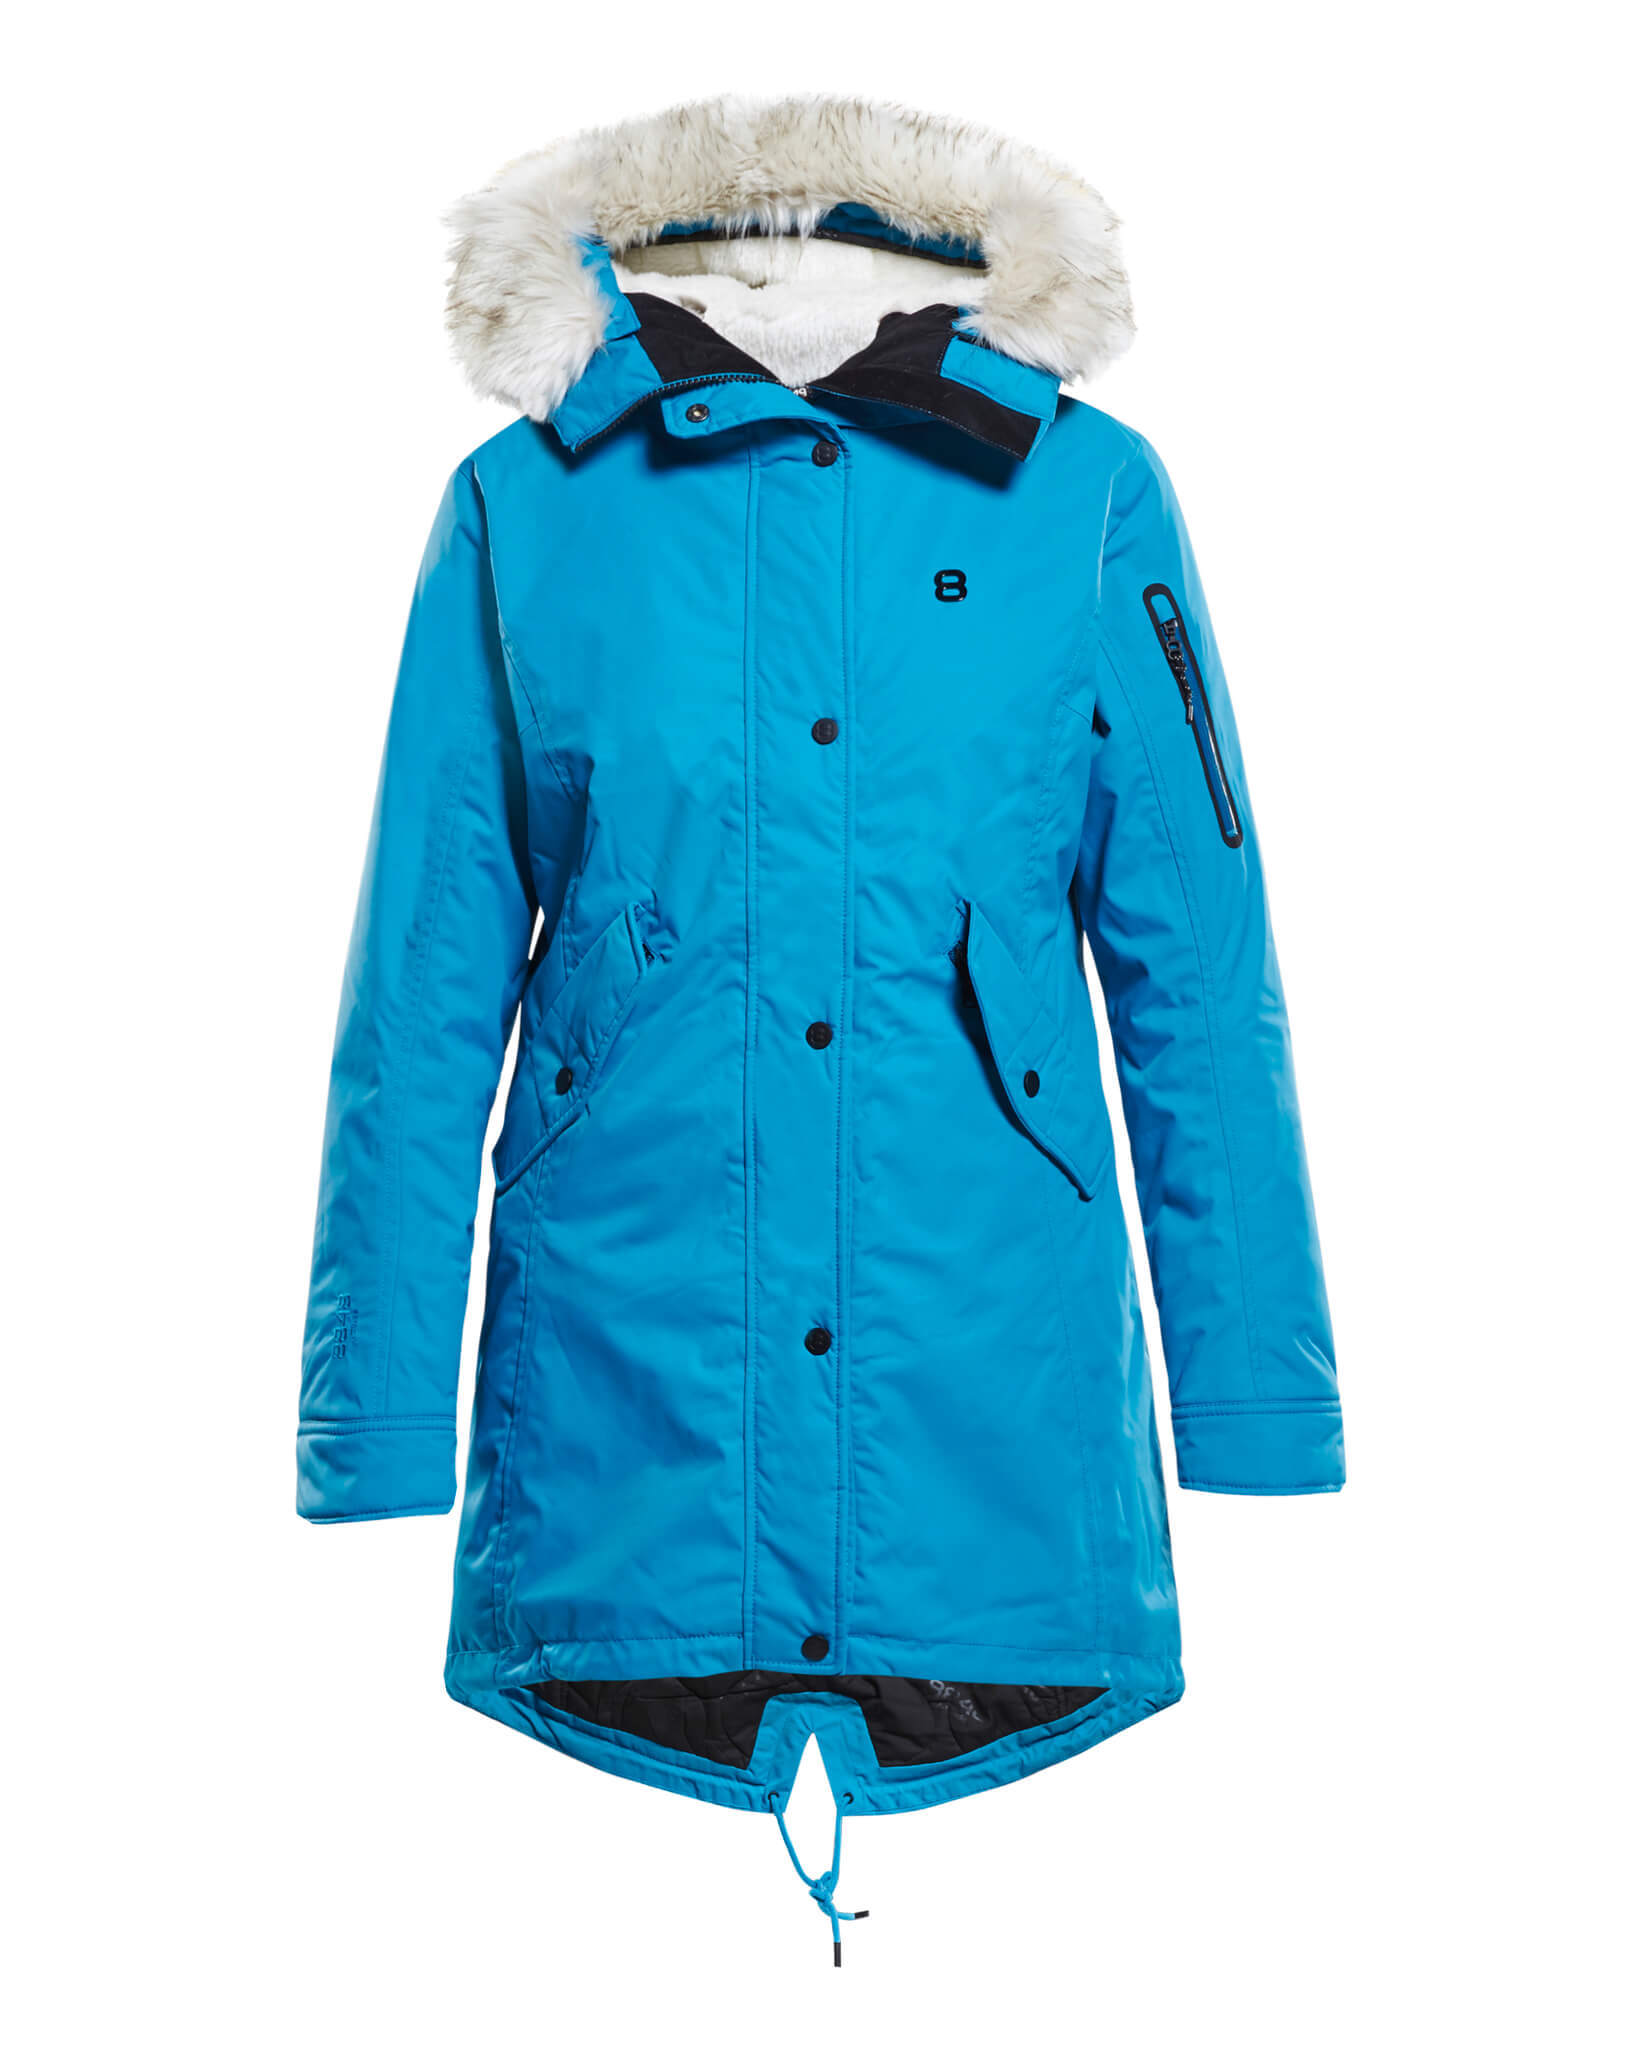 Женская мембранная куртка-парка 8848 Altitude Passion fjord blue купить в  интернет-магазине Five-sport.ru